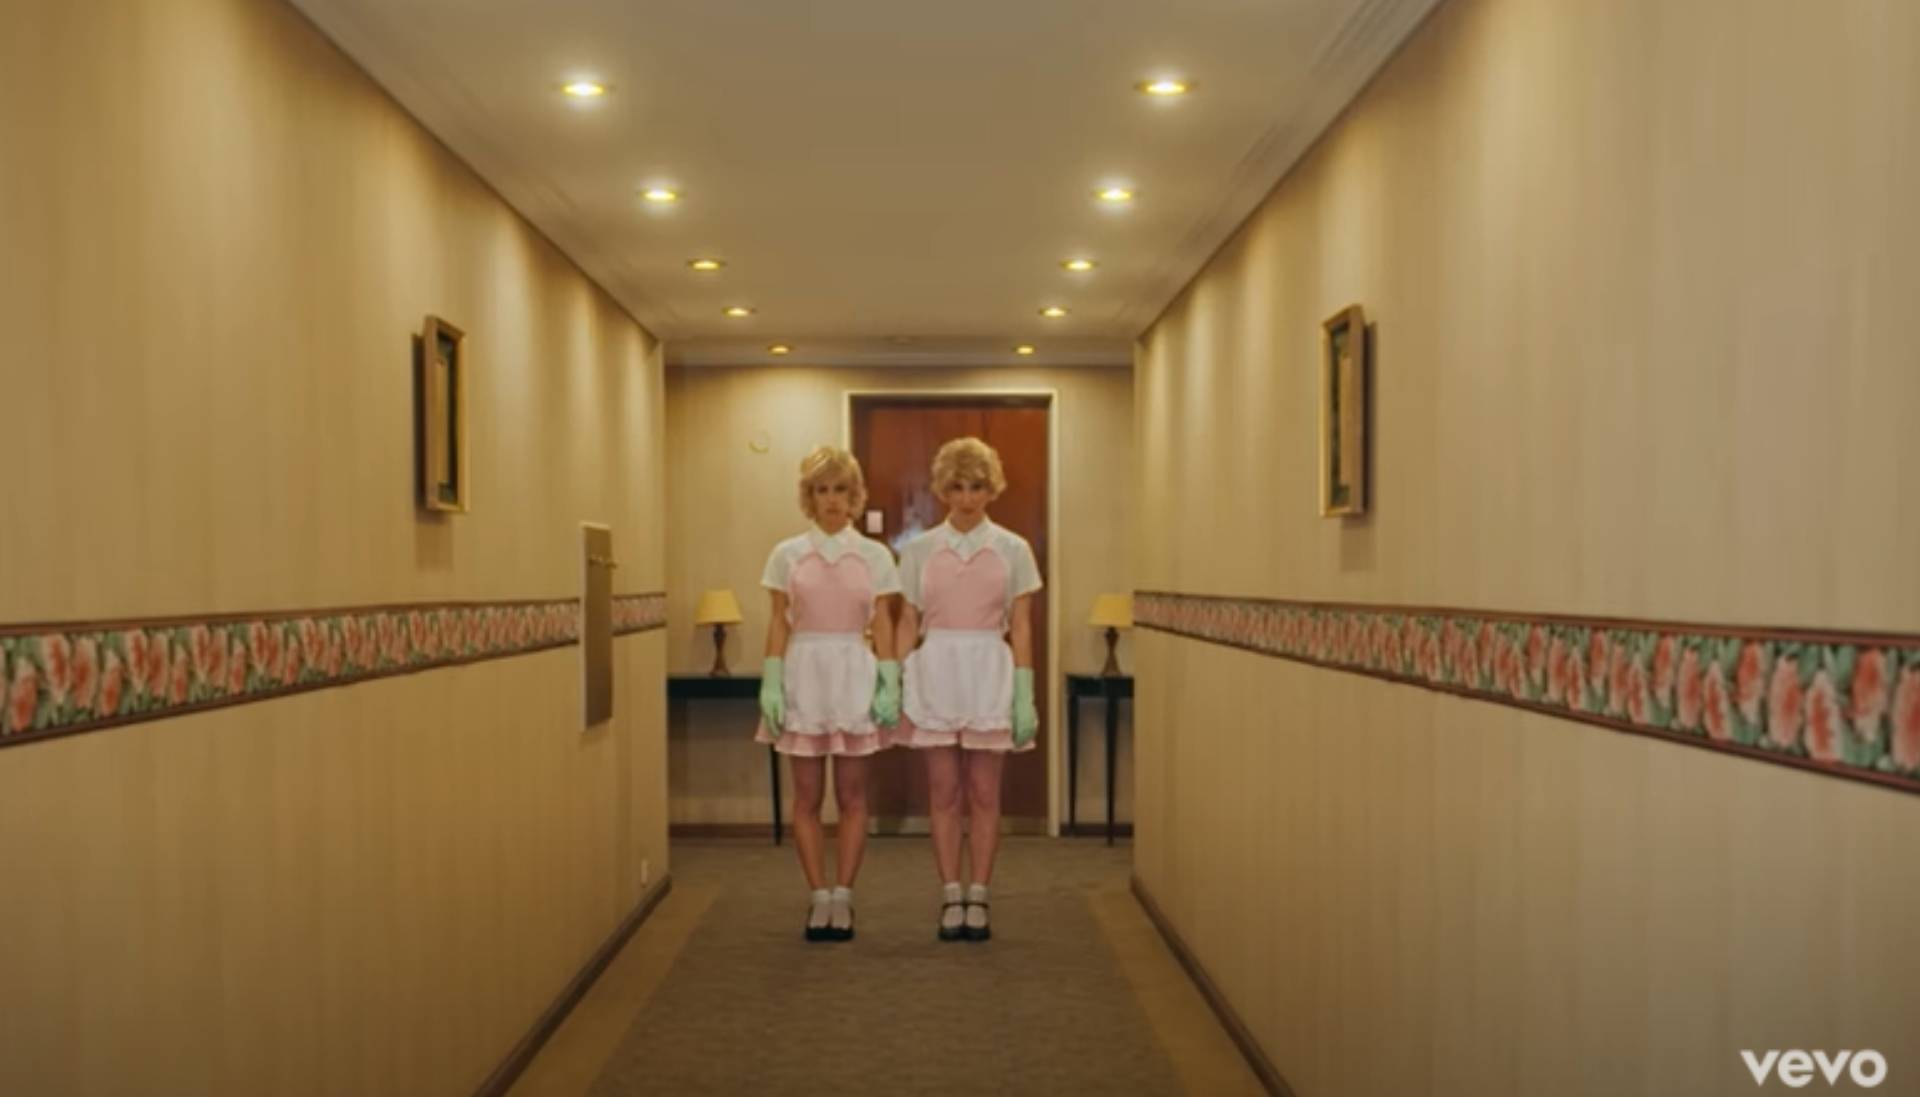 El videoclip "Yo te diré" de Miranda y Lali hace un homenaje a la película "El resplandor"